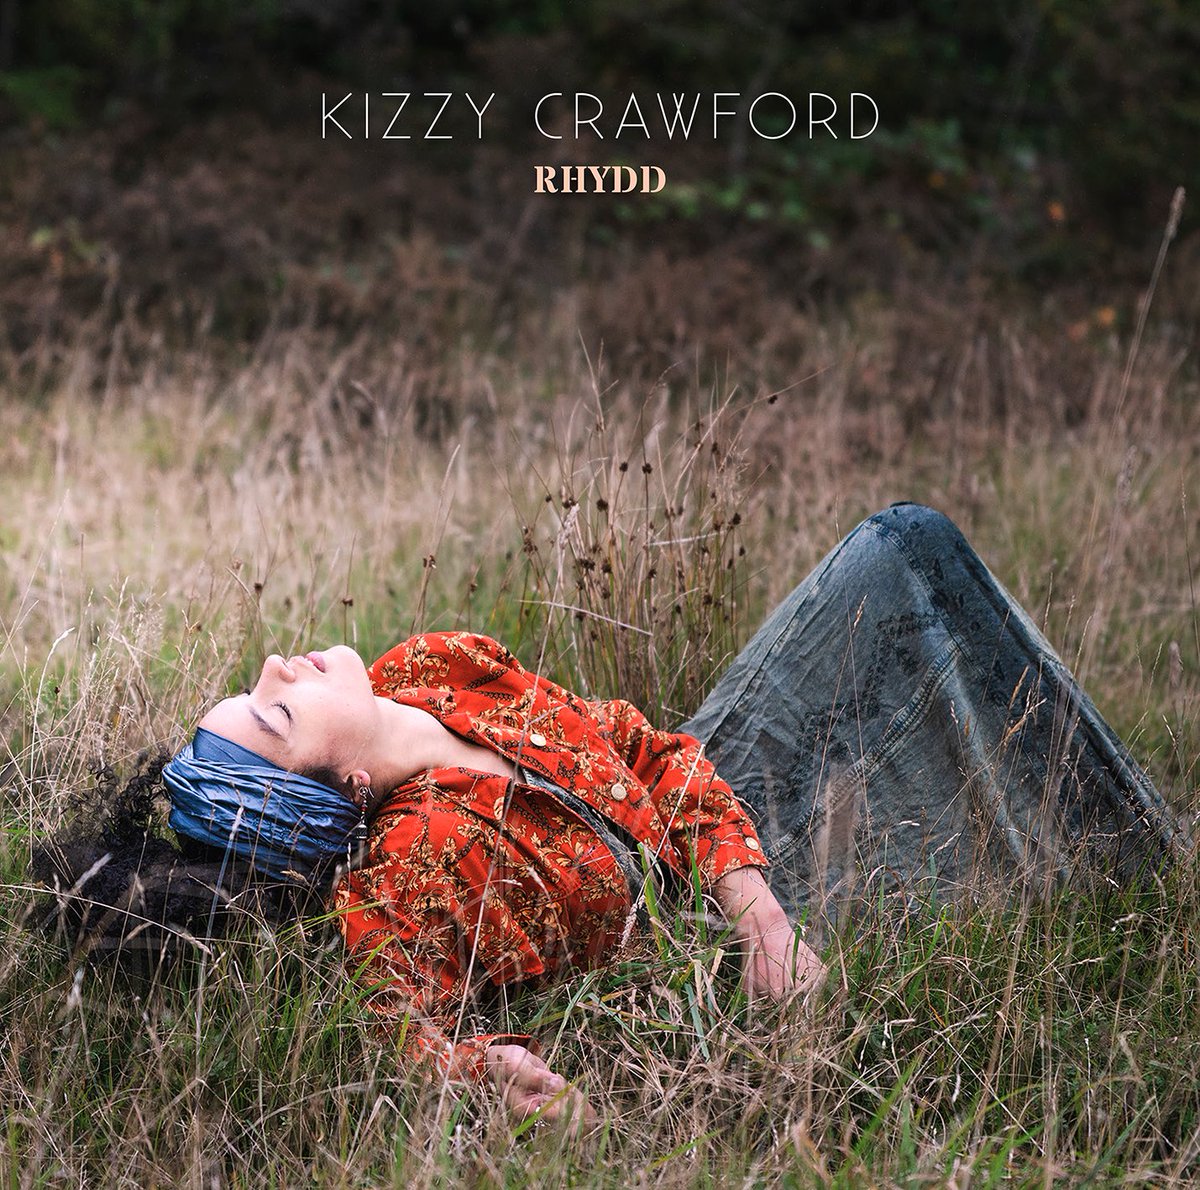 K I Z Z Y C R A W F O R D R H Y D D Albym newydd | New album 26.11.21